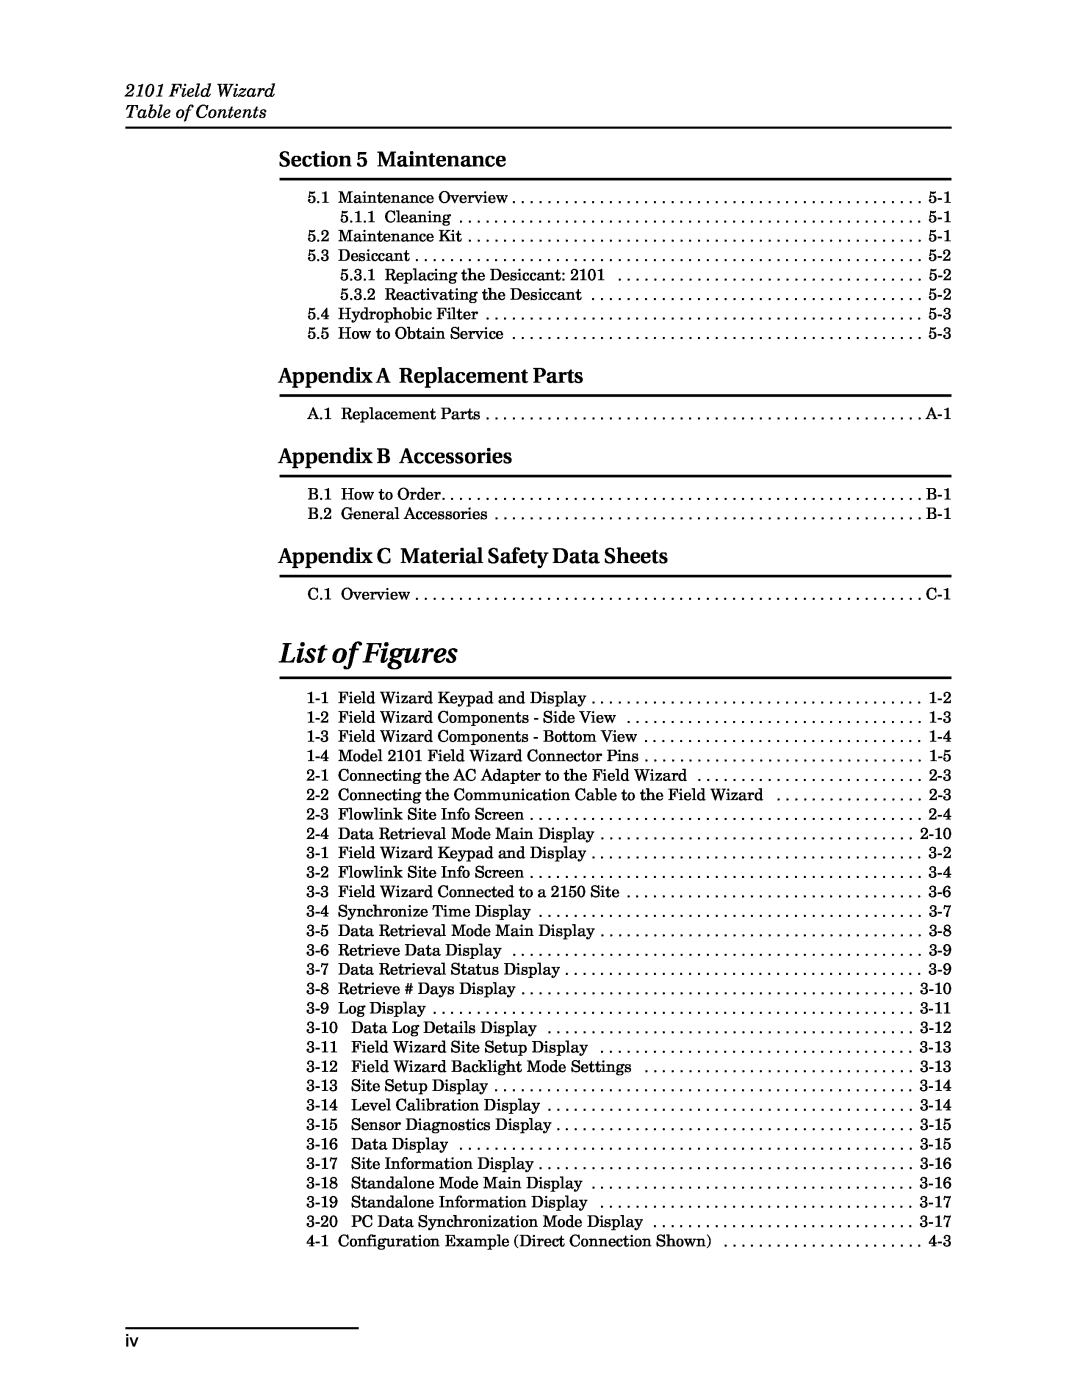 Teledyne 2101 List of Figures, Maintenance, Appendix A Replacement Parts, Appendix B Accessories 